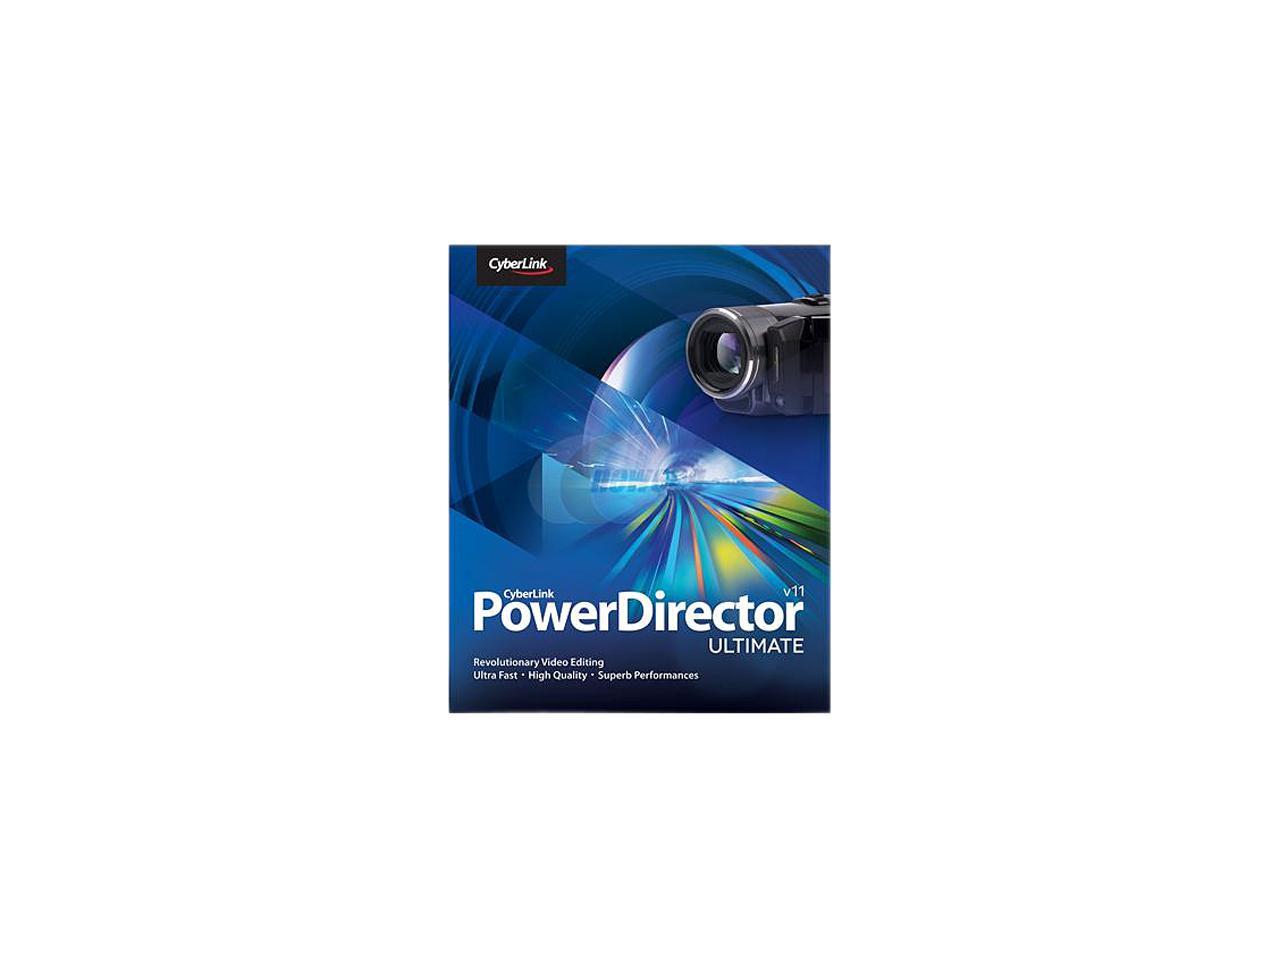 cyberlink powerdirector 11 digital download